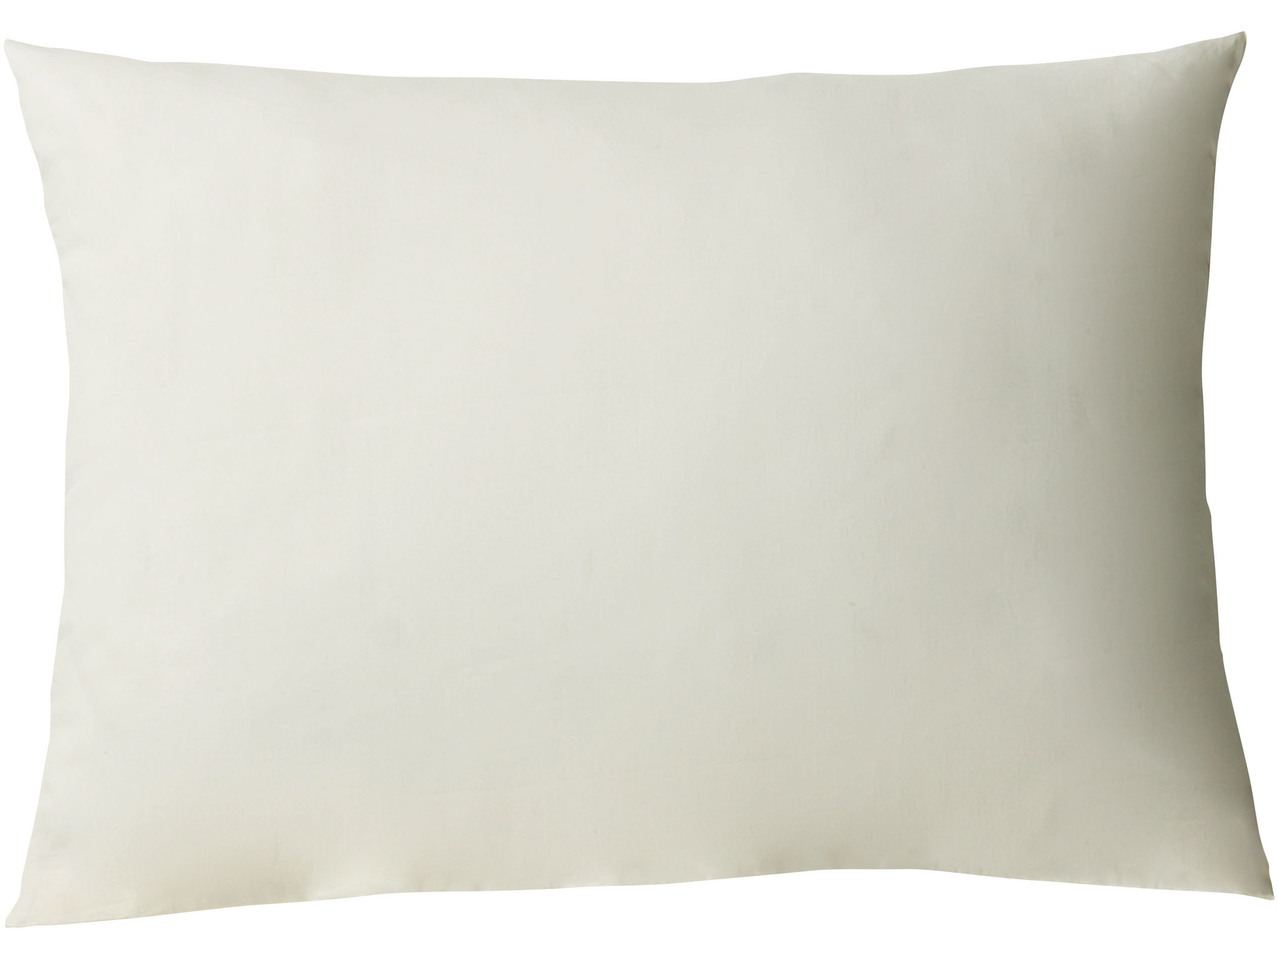 Pillowcase, 50x80cm